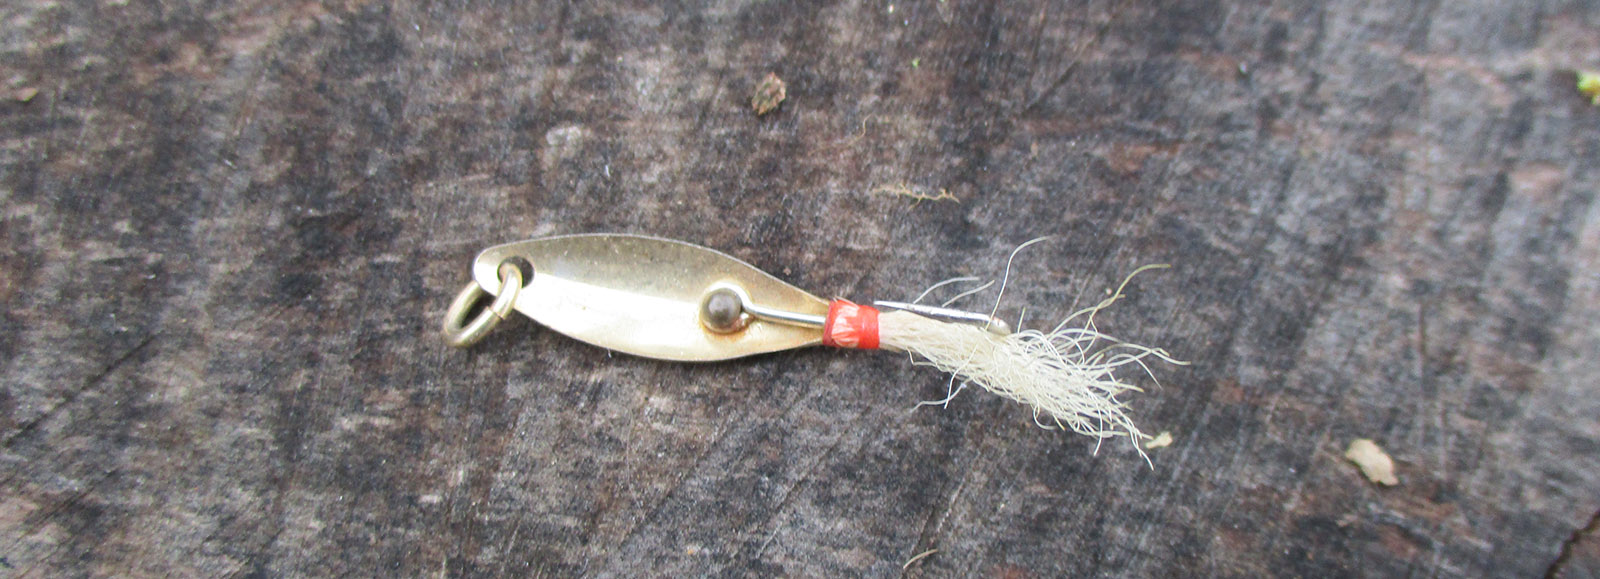 Fishing Bait Metal Jigs Fishing Bass Slow Spinner Spoon Wobbler Trolling F4